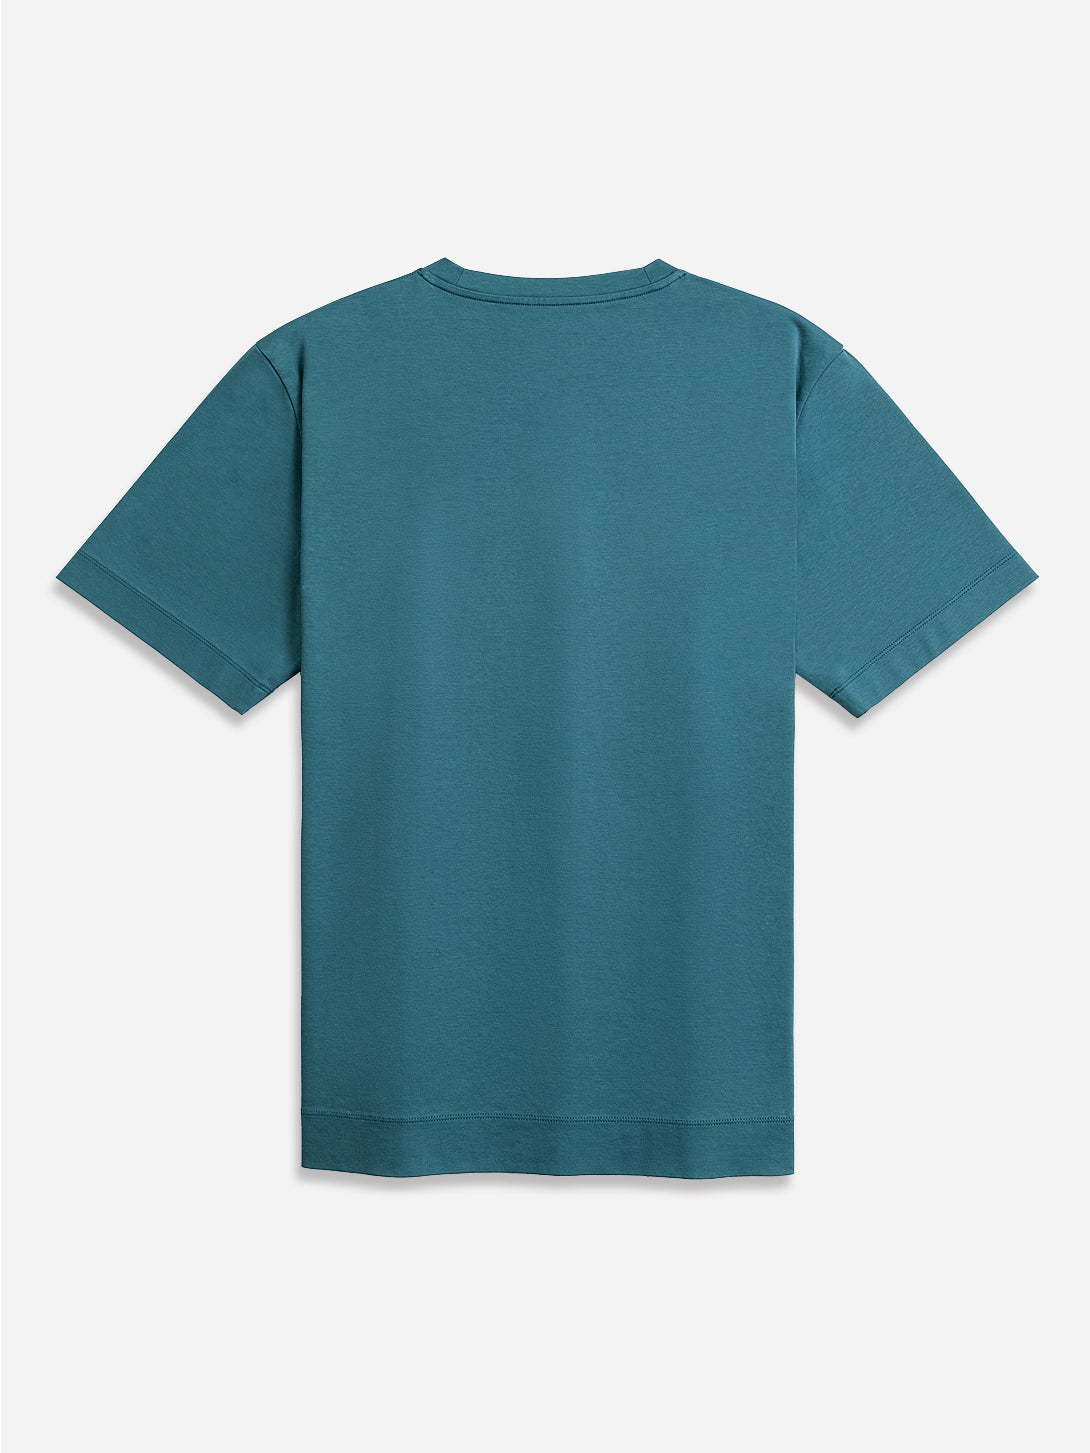 Mallard Blue Baseile Pocket Tee Men's O.N.S Boxy Cut T-Shirt